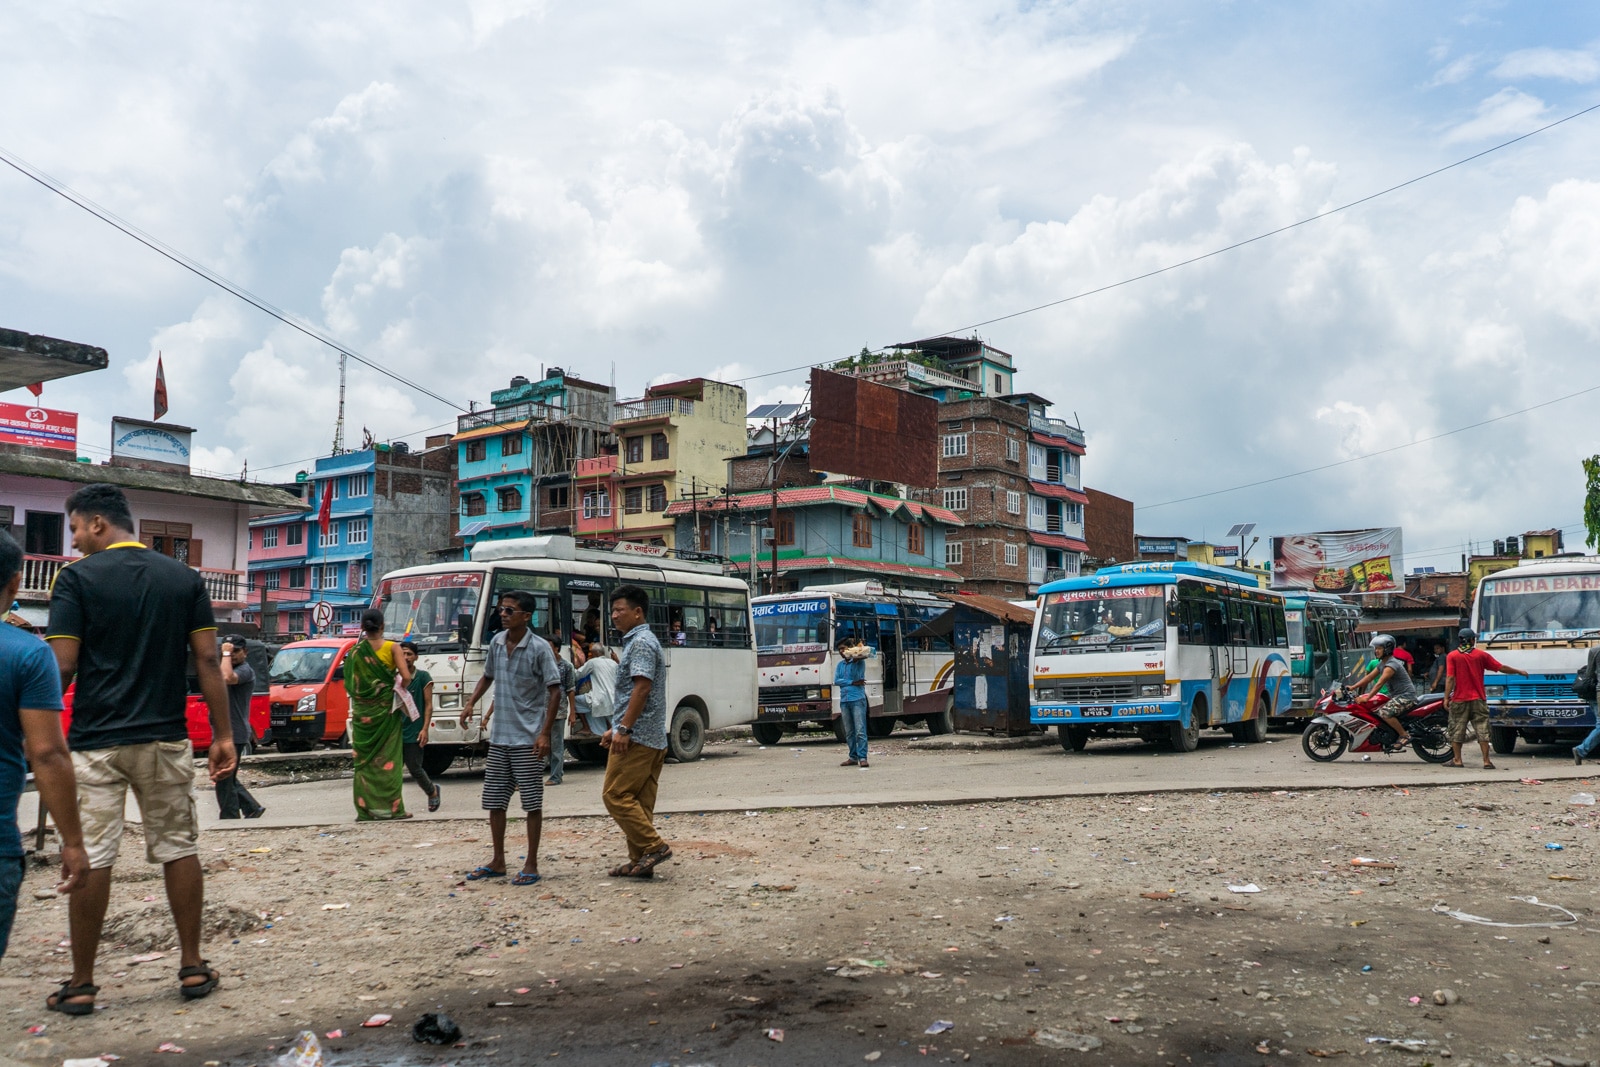 India - Nepal border crossing at Panitanki - Kakarbhitta - Bus stand in Kakarbhitta - Lost With Purpose